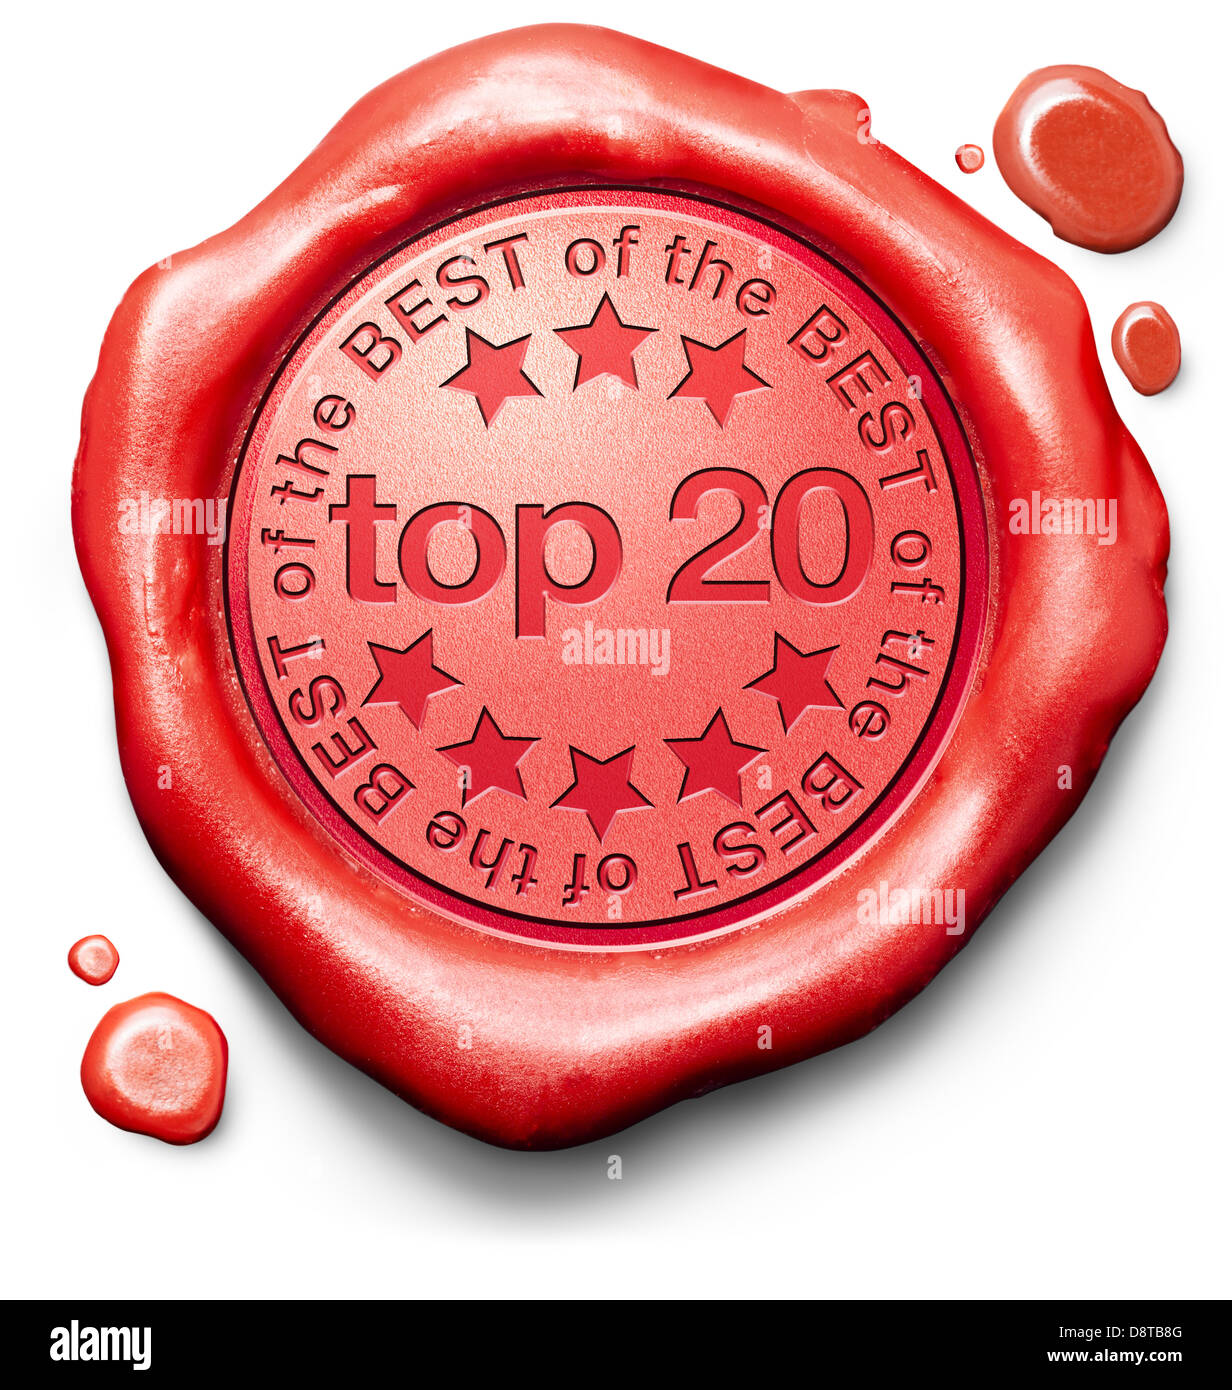 Top 5 besten Bestseller Qualität Etikett rotes Wachs Siegelstempel oder Abzeichen Stockfoto